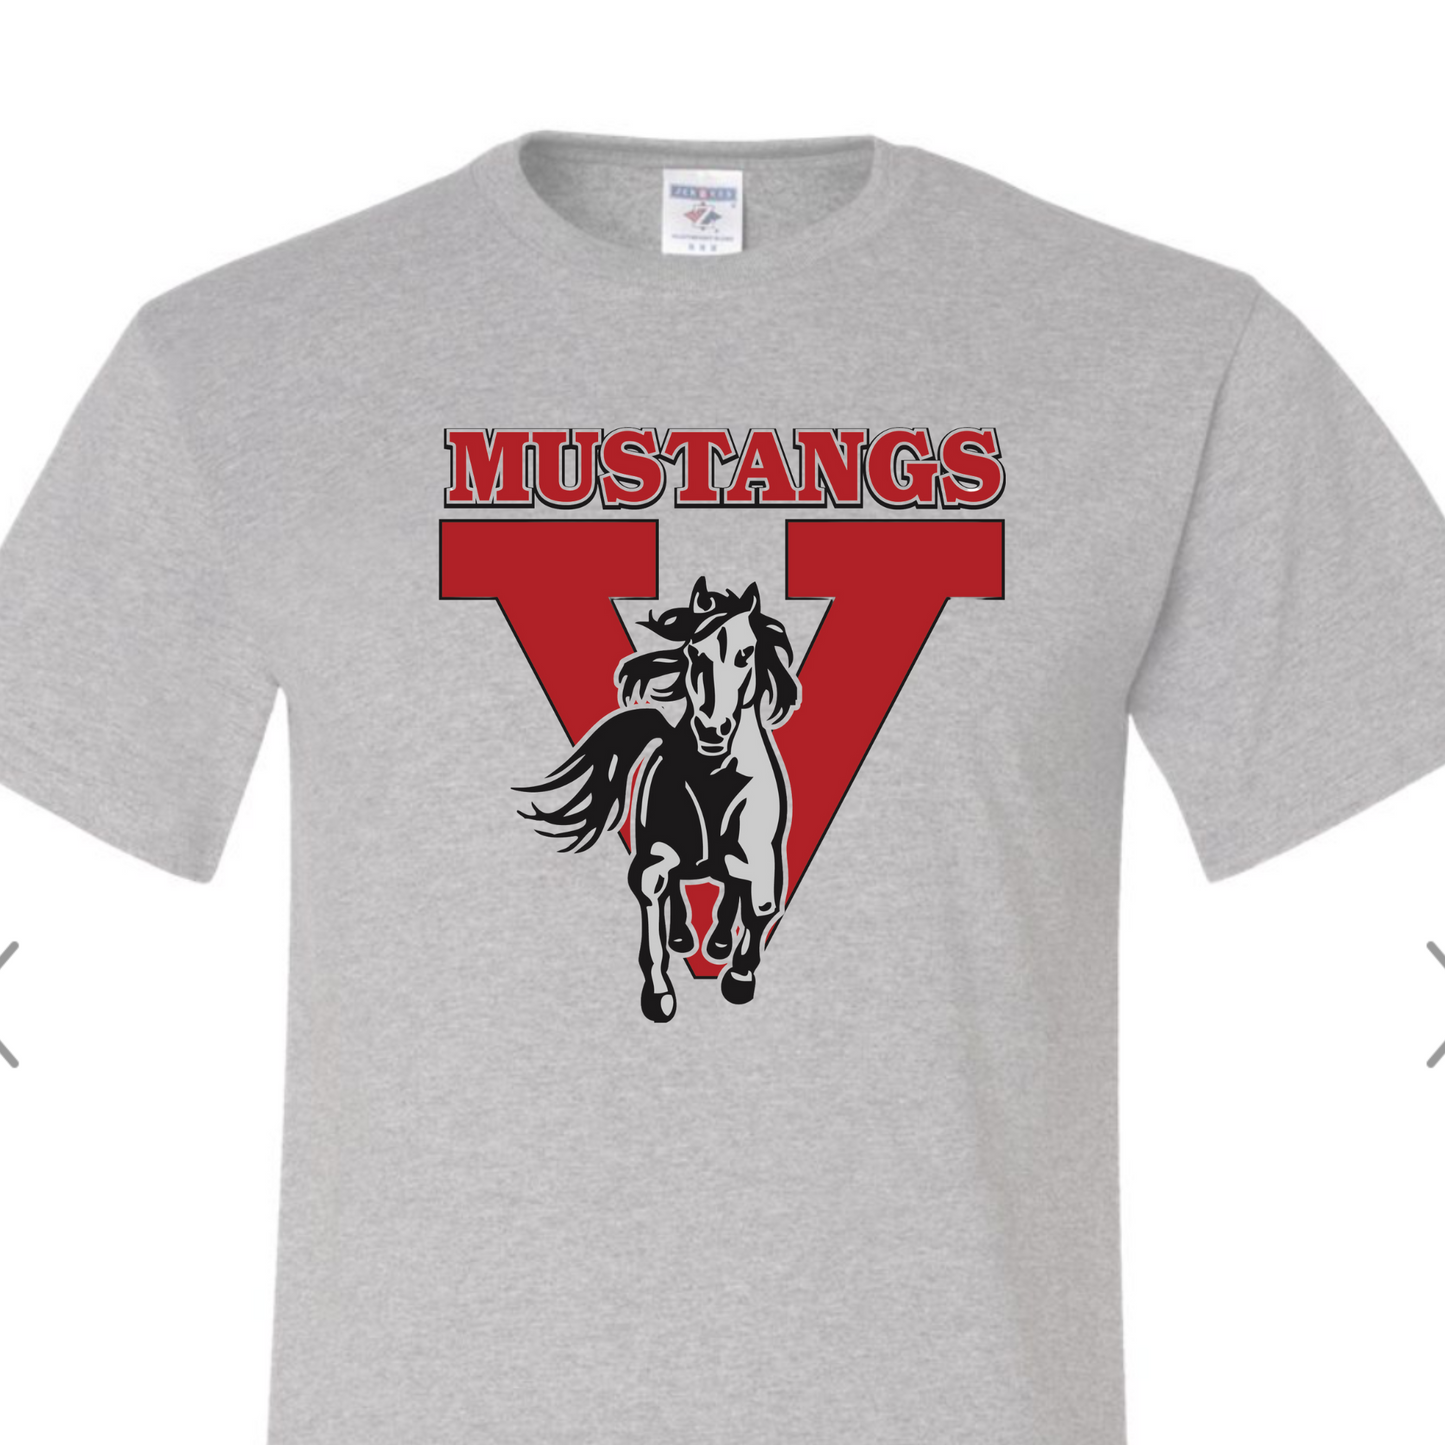 OG Mustangs T Shirt